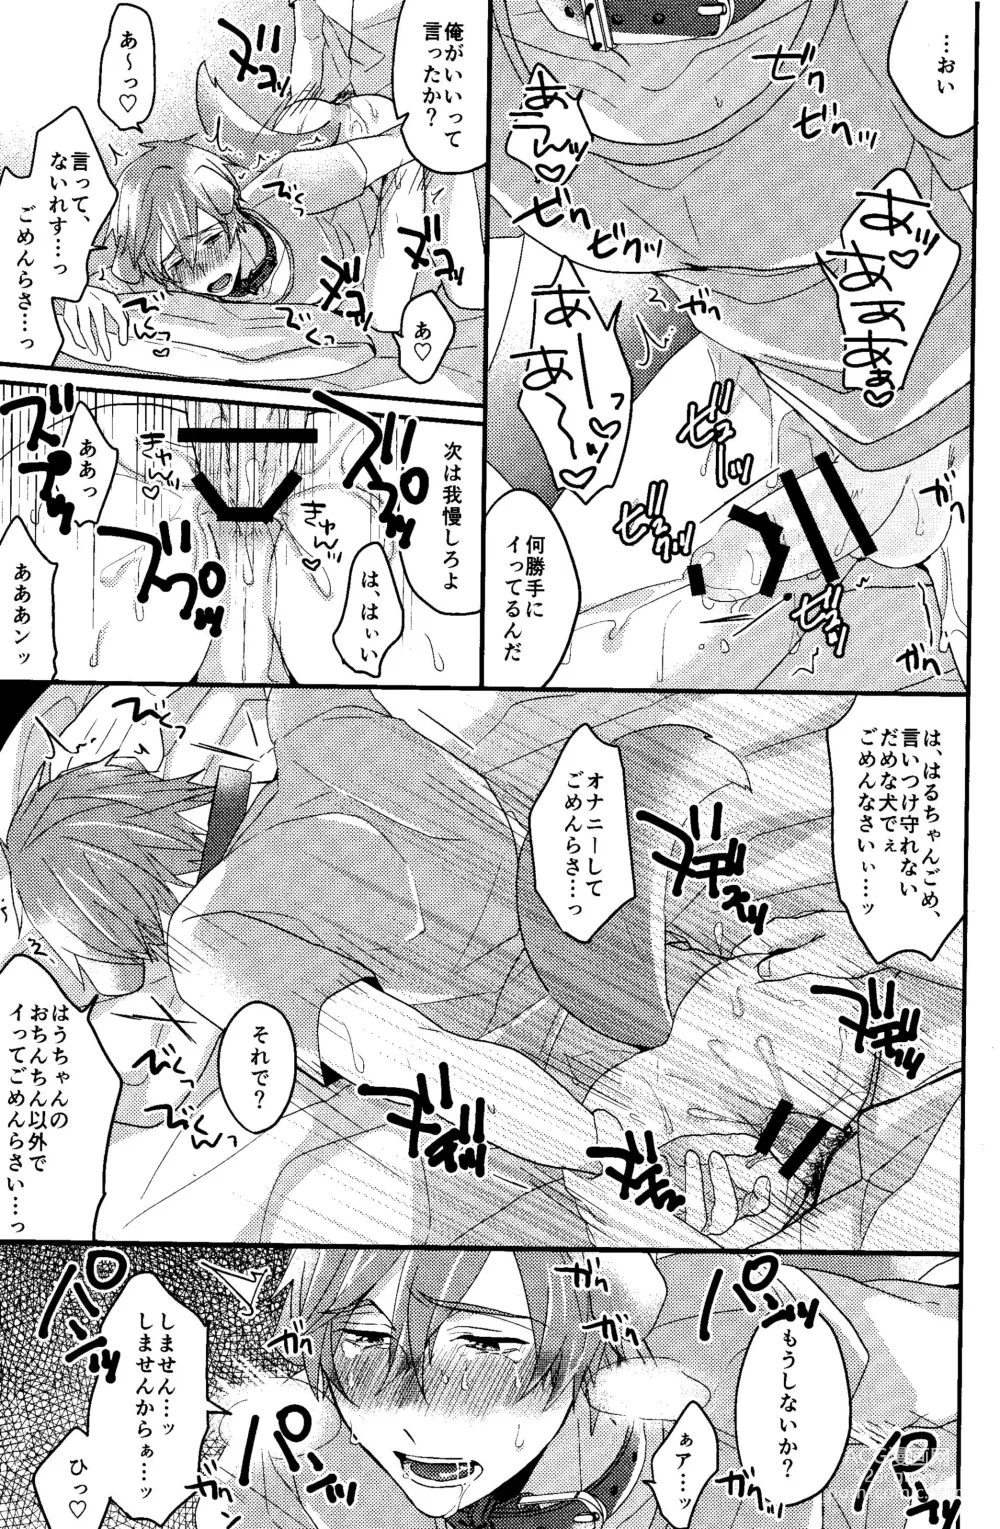 Page 15 of doujinshi Shitsuke no Yoi Inu